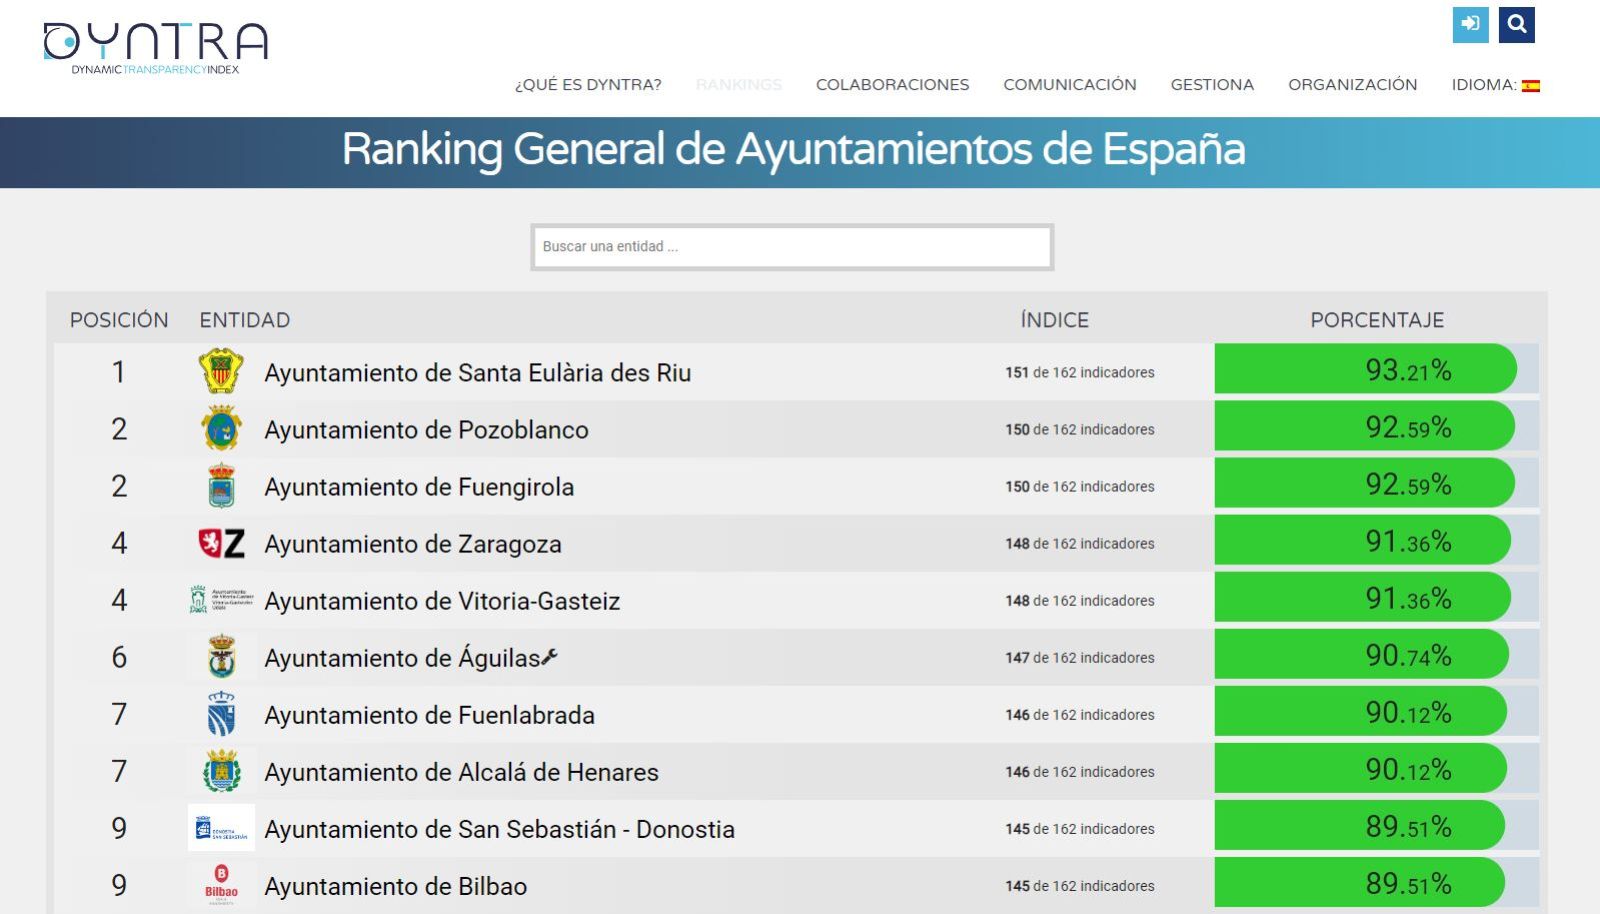 Santa Eulària des Riu se convierte en el ayuntamiento más transparente de España según el índice Dyntra